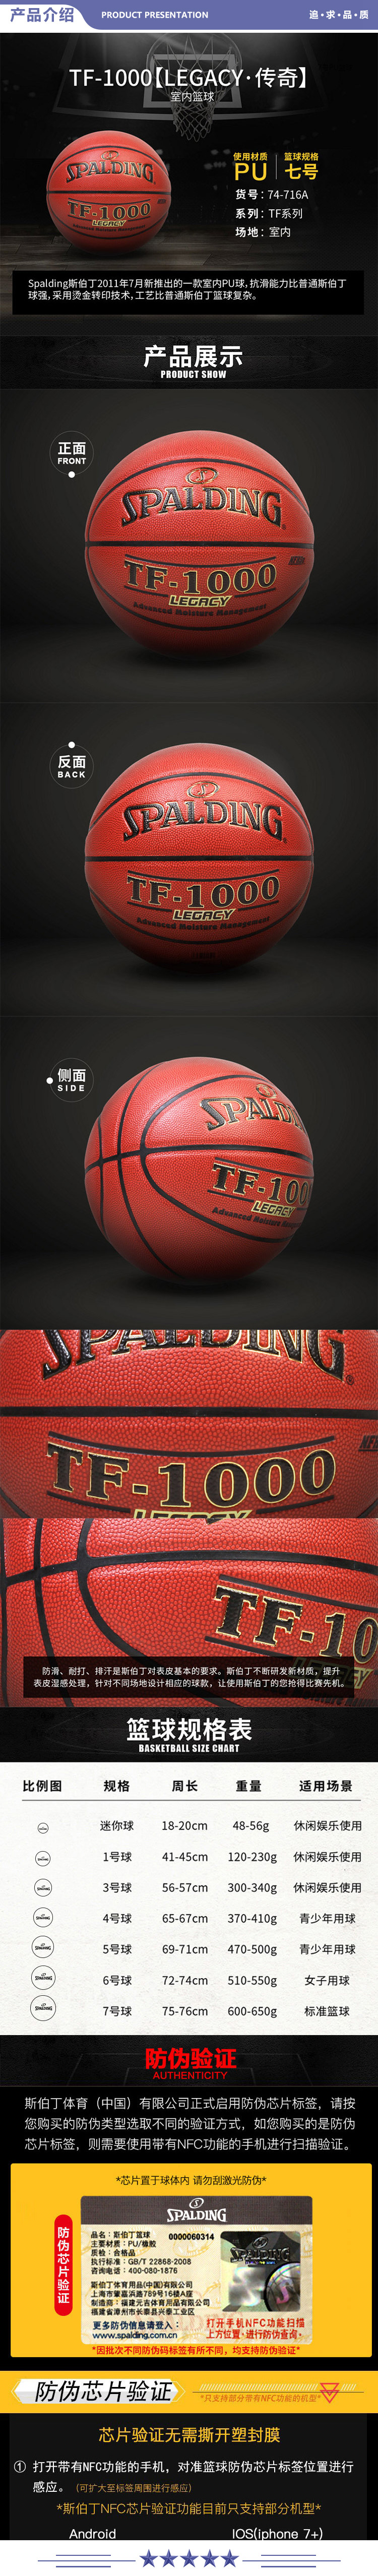 斯伯丁 74-716A TF-1000传奇系列室内比赛高品质PU篮球 2.jpg